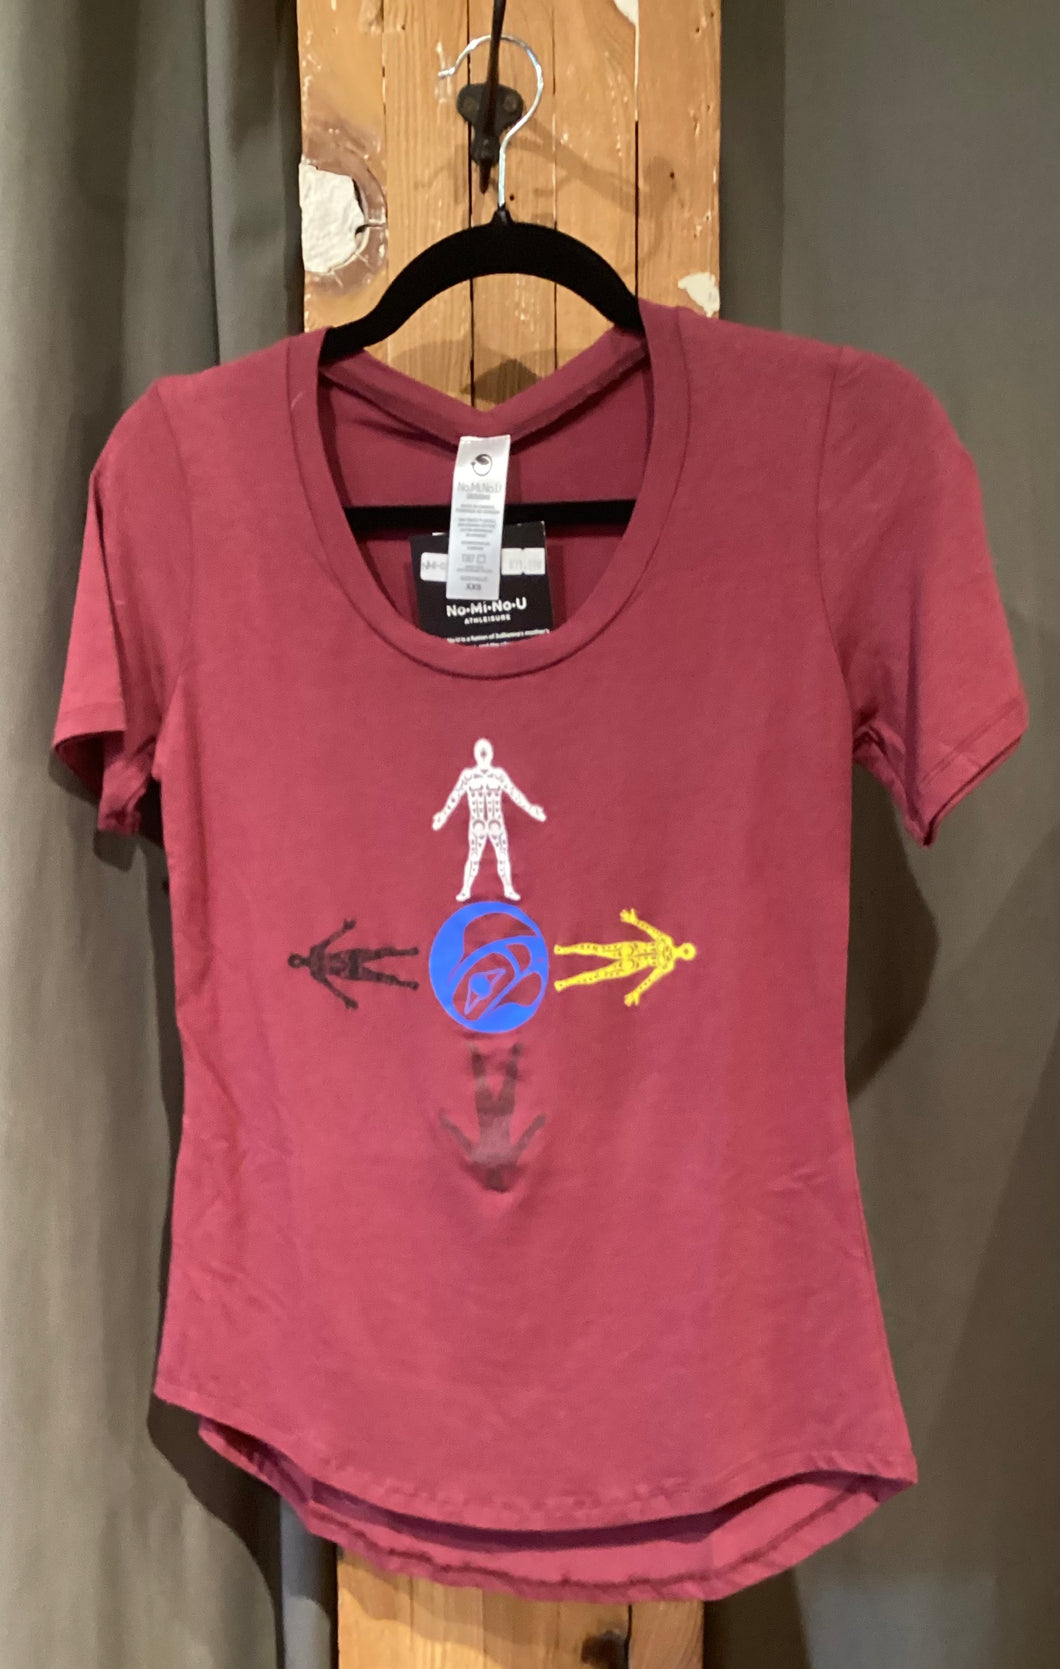 NM1-036 Women’s T-Shirt